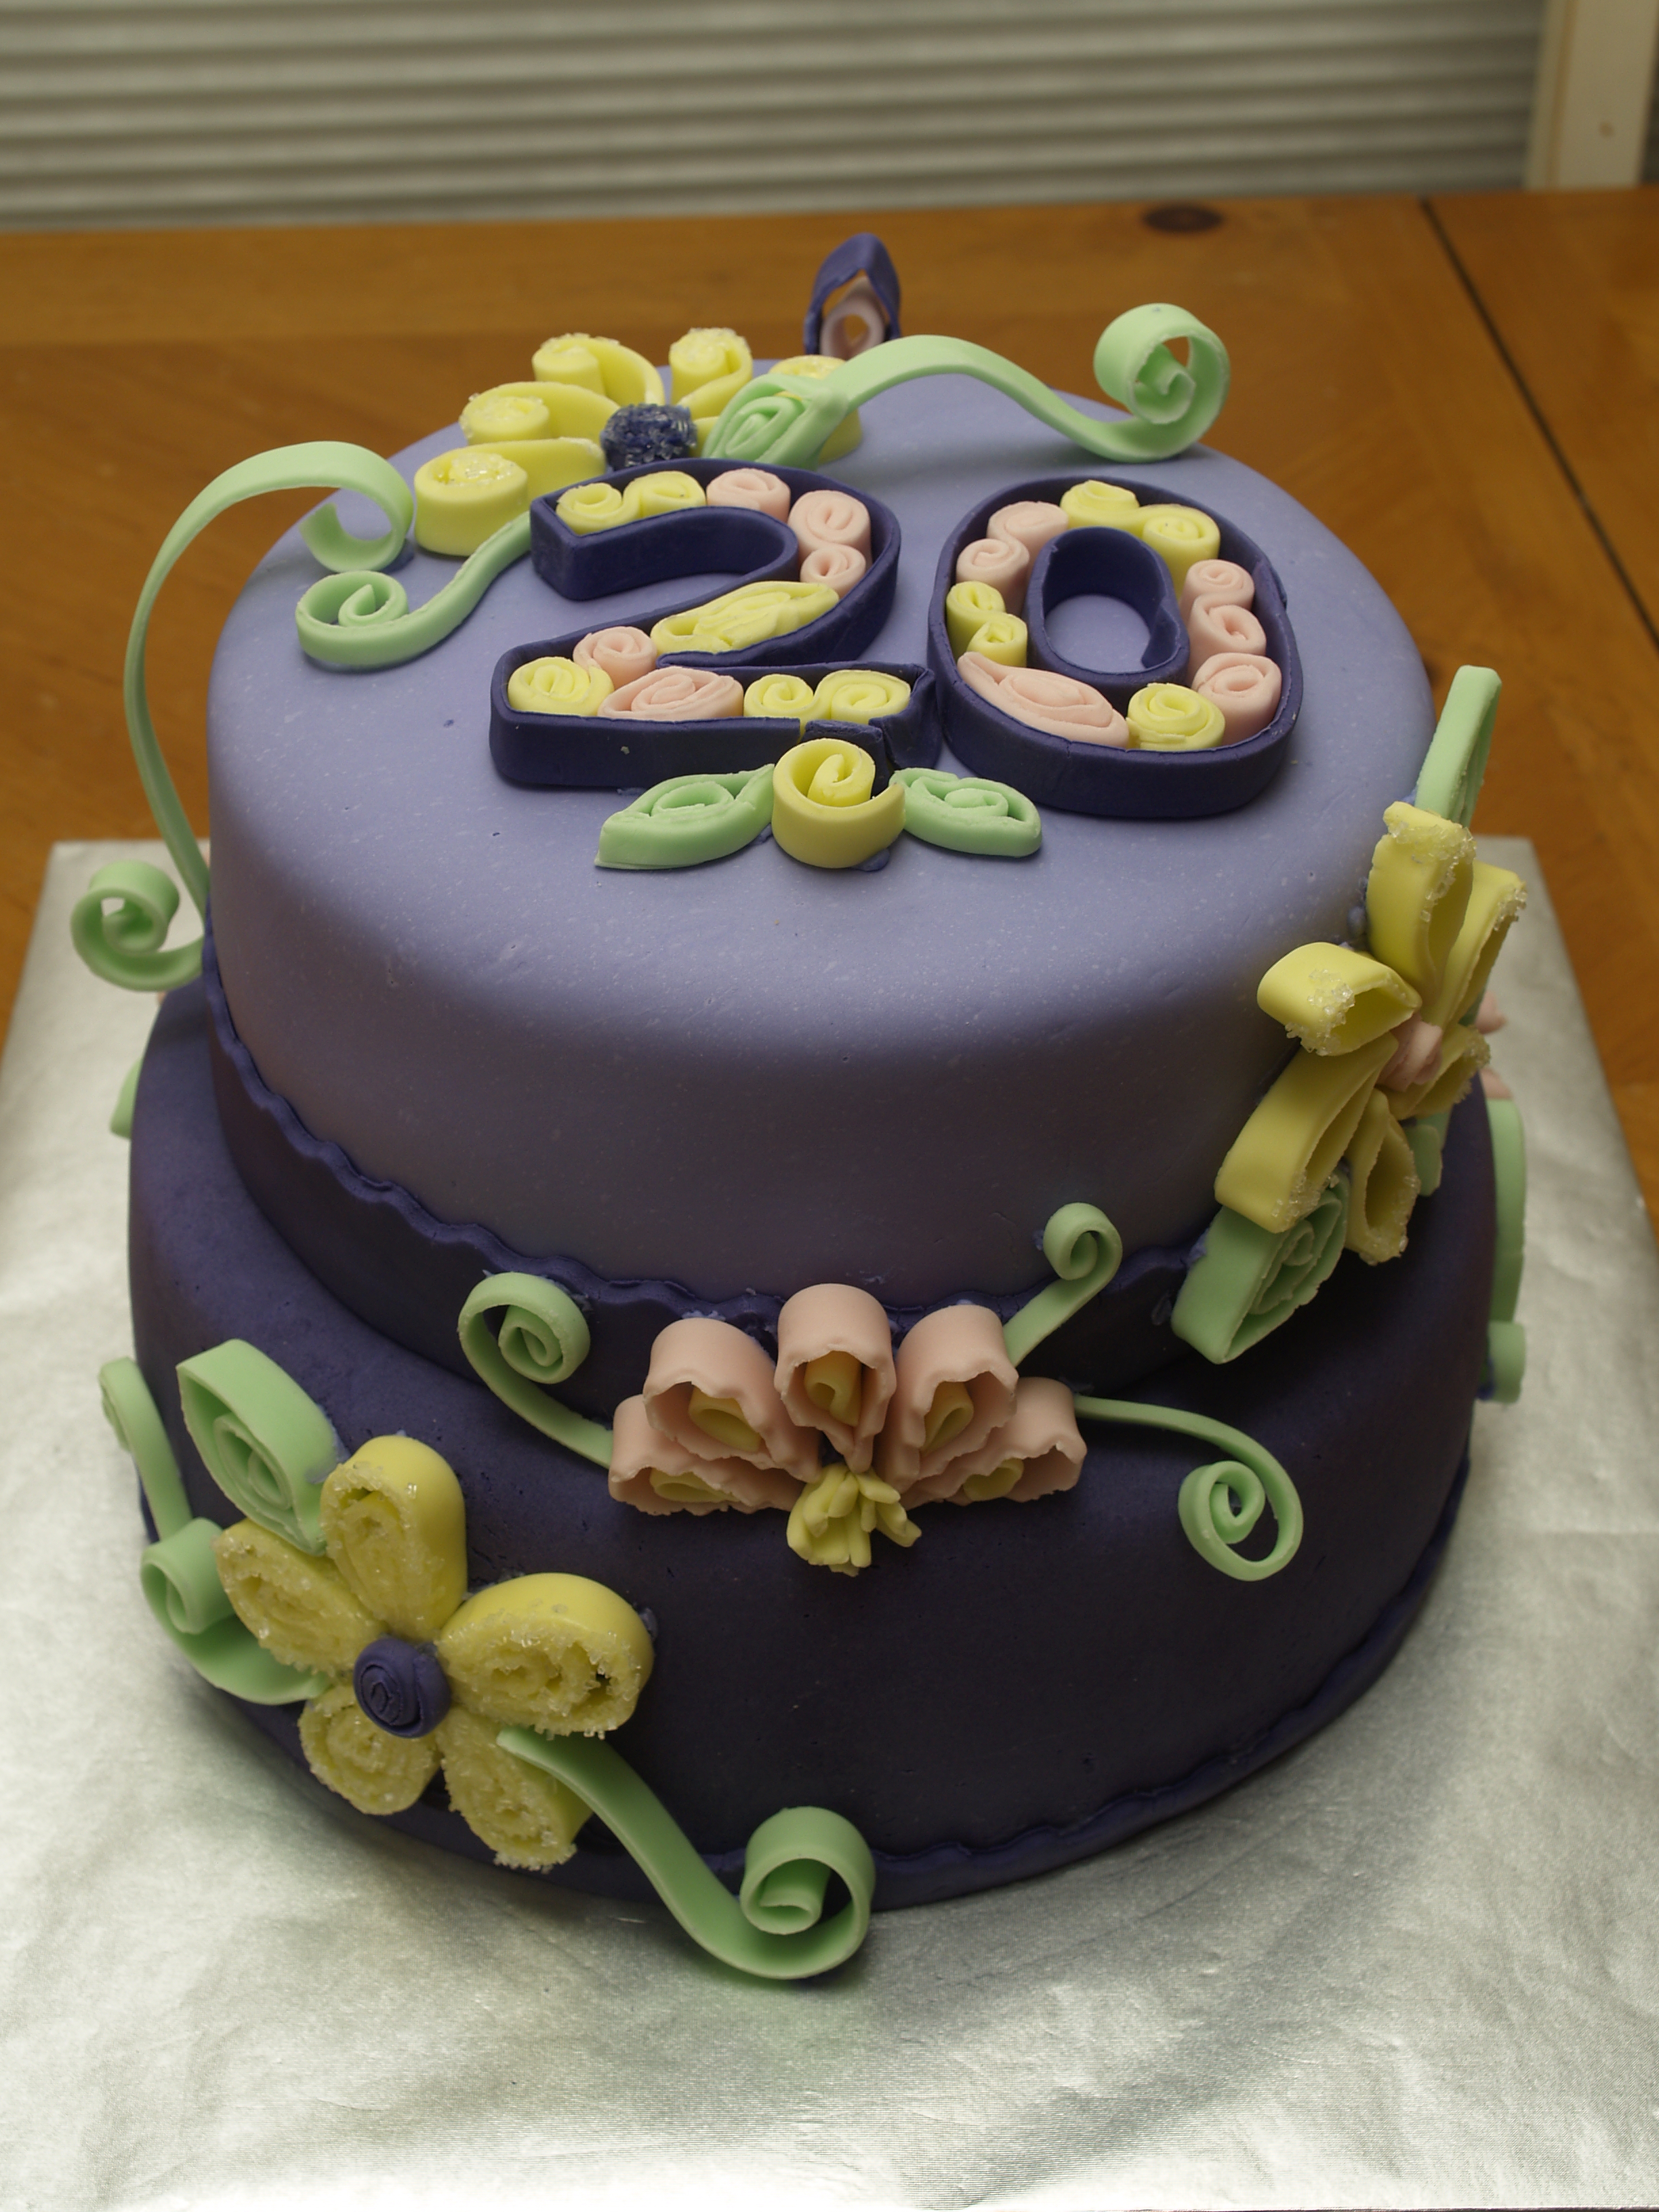 20 Year Work Anniversary Cake